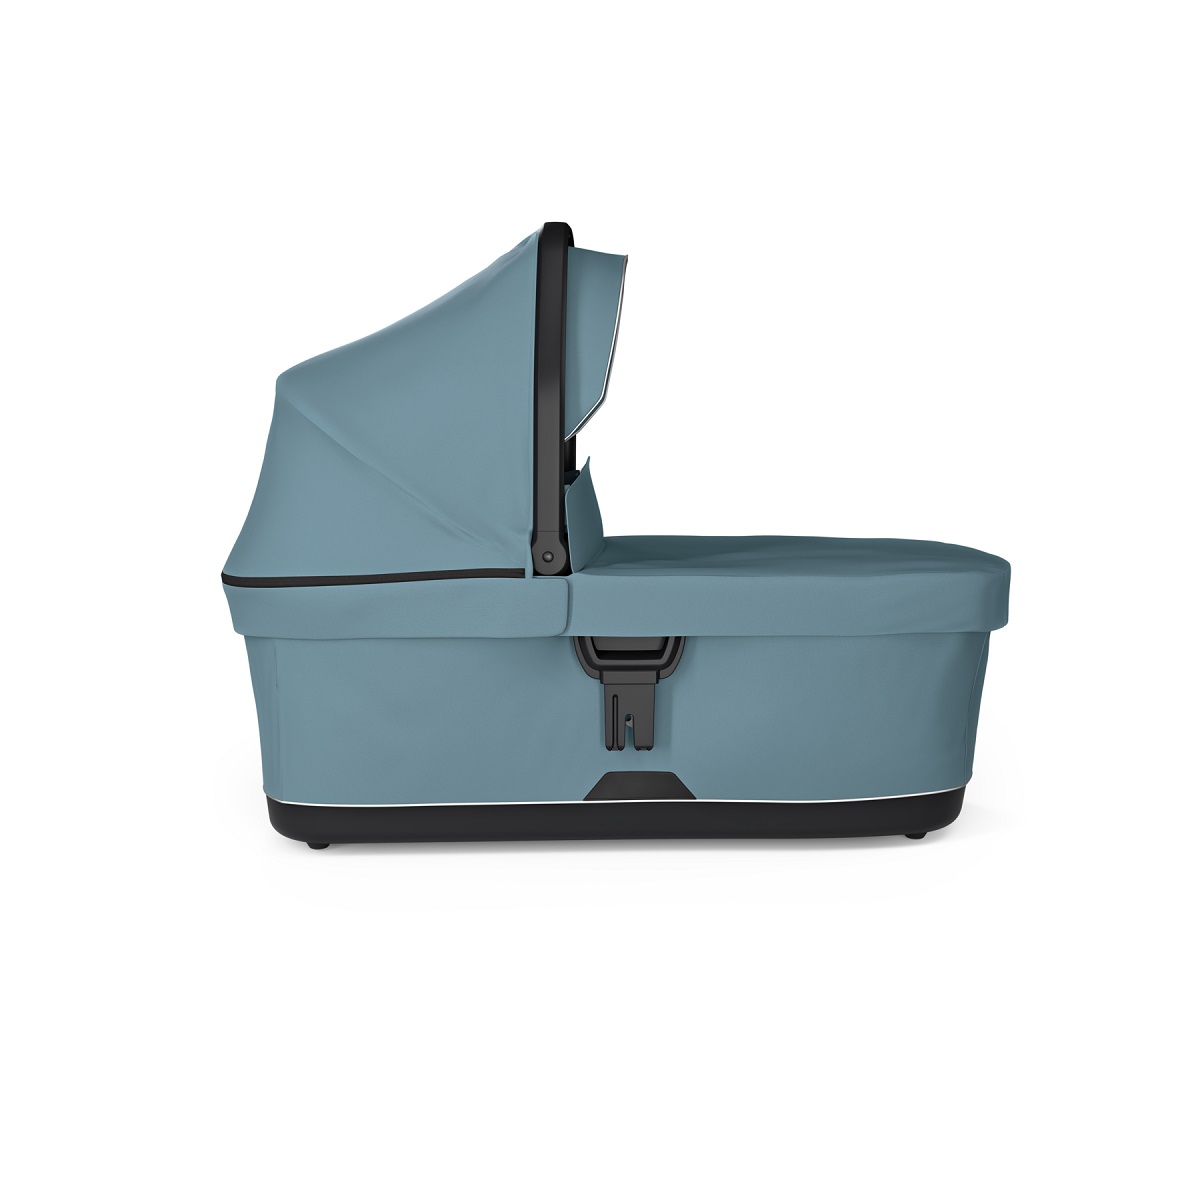 Thule bassinet košara za kolica - plava